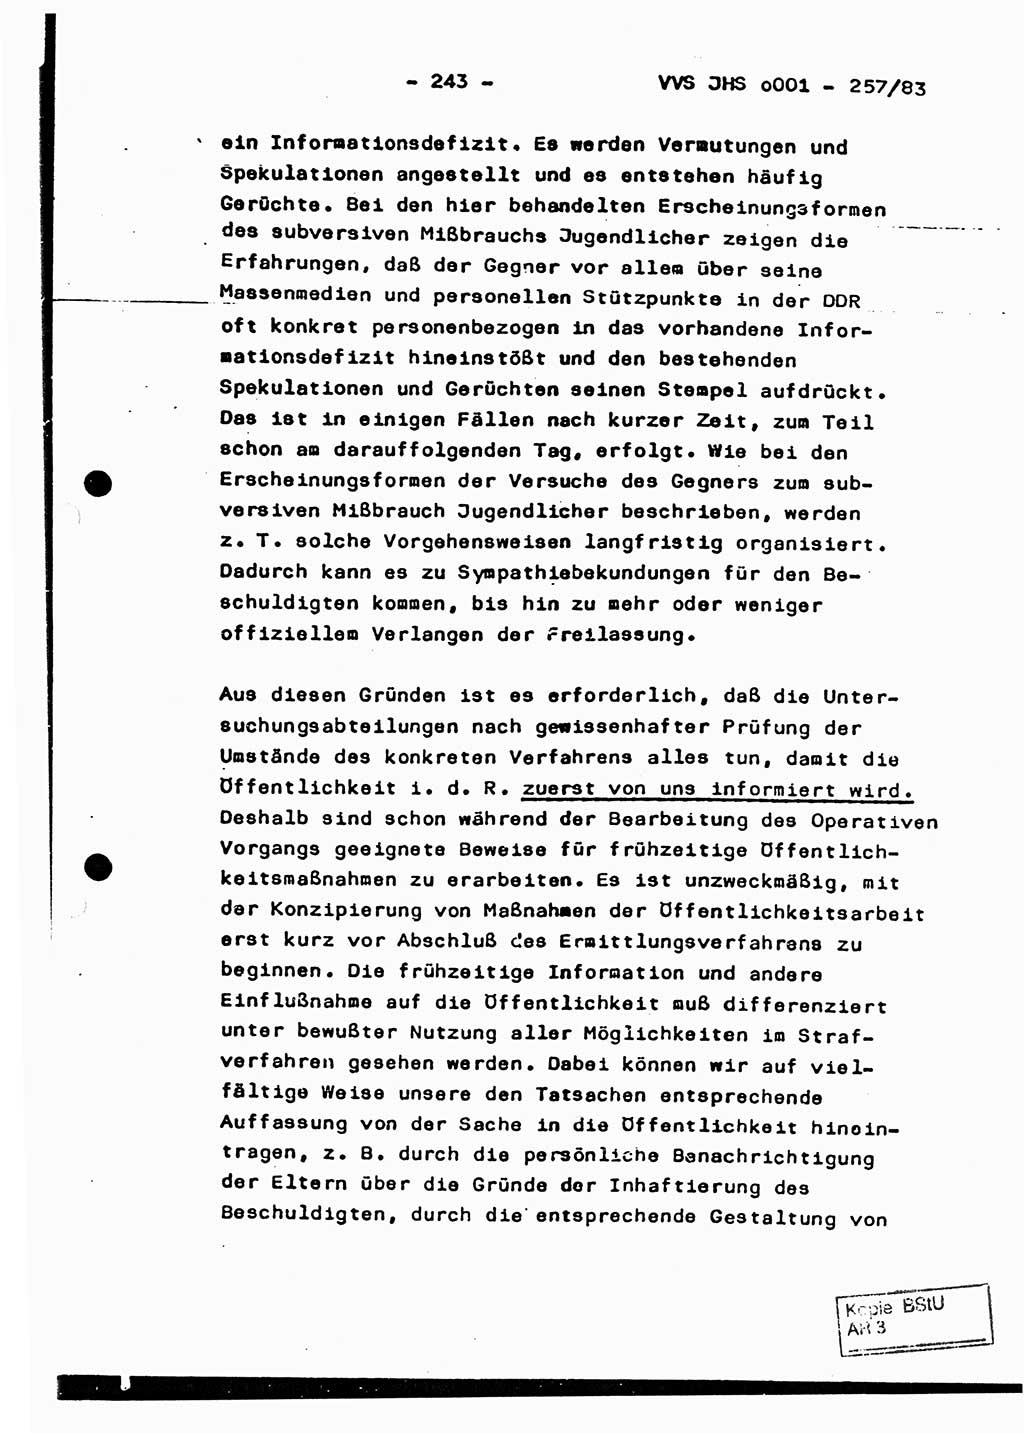 Dissertation, Oberst Helmut Lubas (BV Mdg.), Oberstleutnant Manfred Eschberger (HA IX), Oberleutnant Hans-Jürgen Ludwig (JHS), Ministerium für Staatssicherheit (MfS) [Deutsche Demokratische Republik (DDR)], Juristische Hochschule (JHS), Vertrauliche Verschlußsache (VVS) o001-257/83, Potsdam 1983, Seite 243 (Diss. MfS DDR JHS VVS o001-257/83 1983, S. 243)